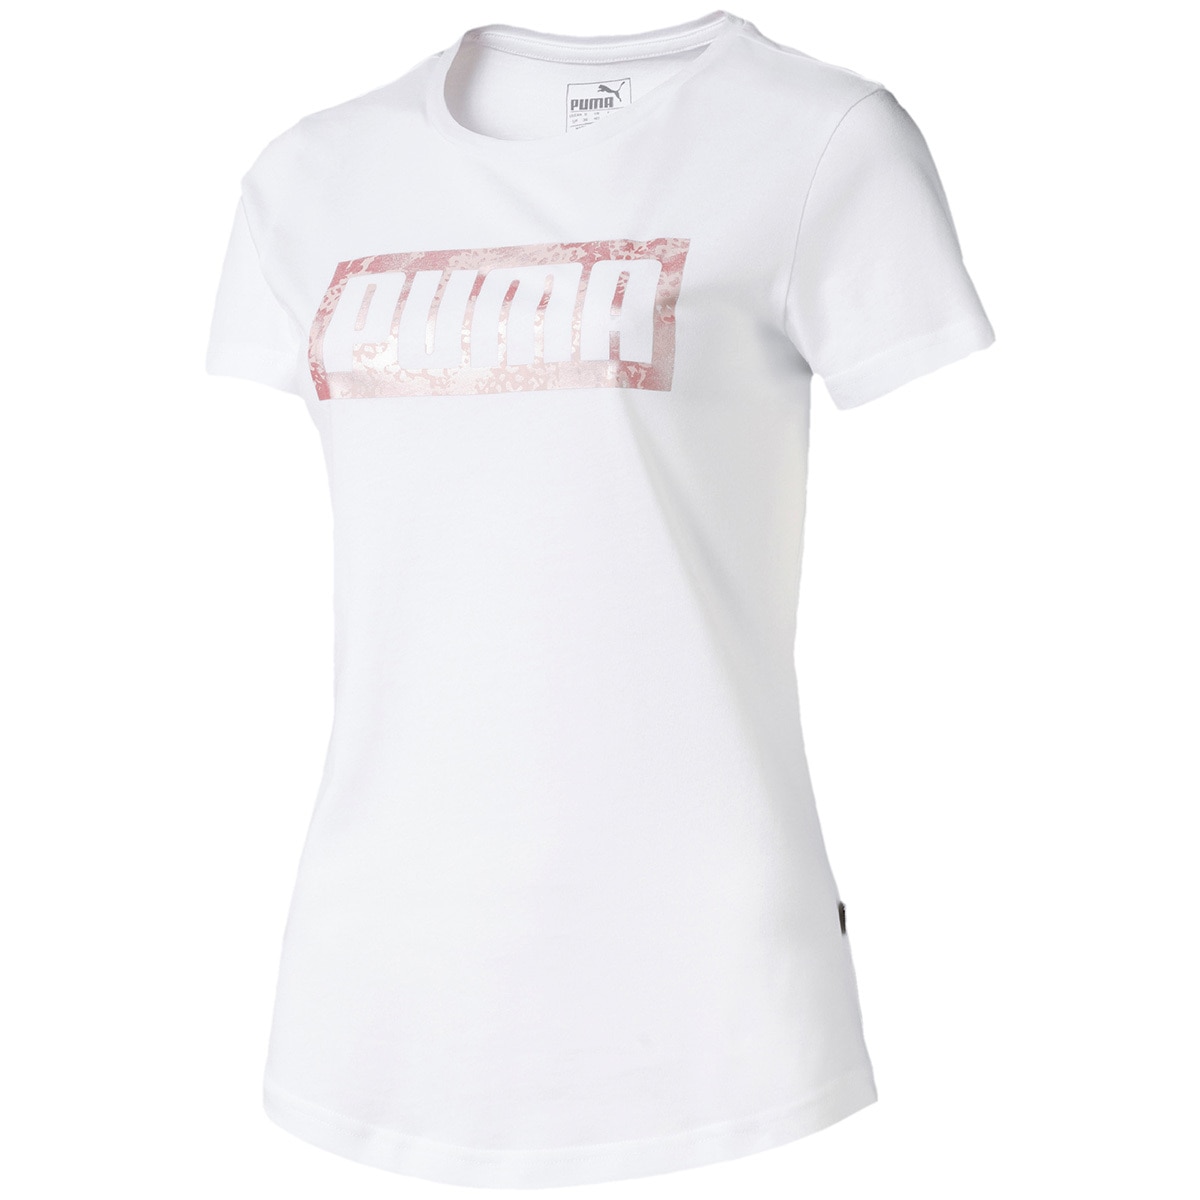 Puma-Women's Graphic Logo Tee - White